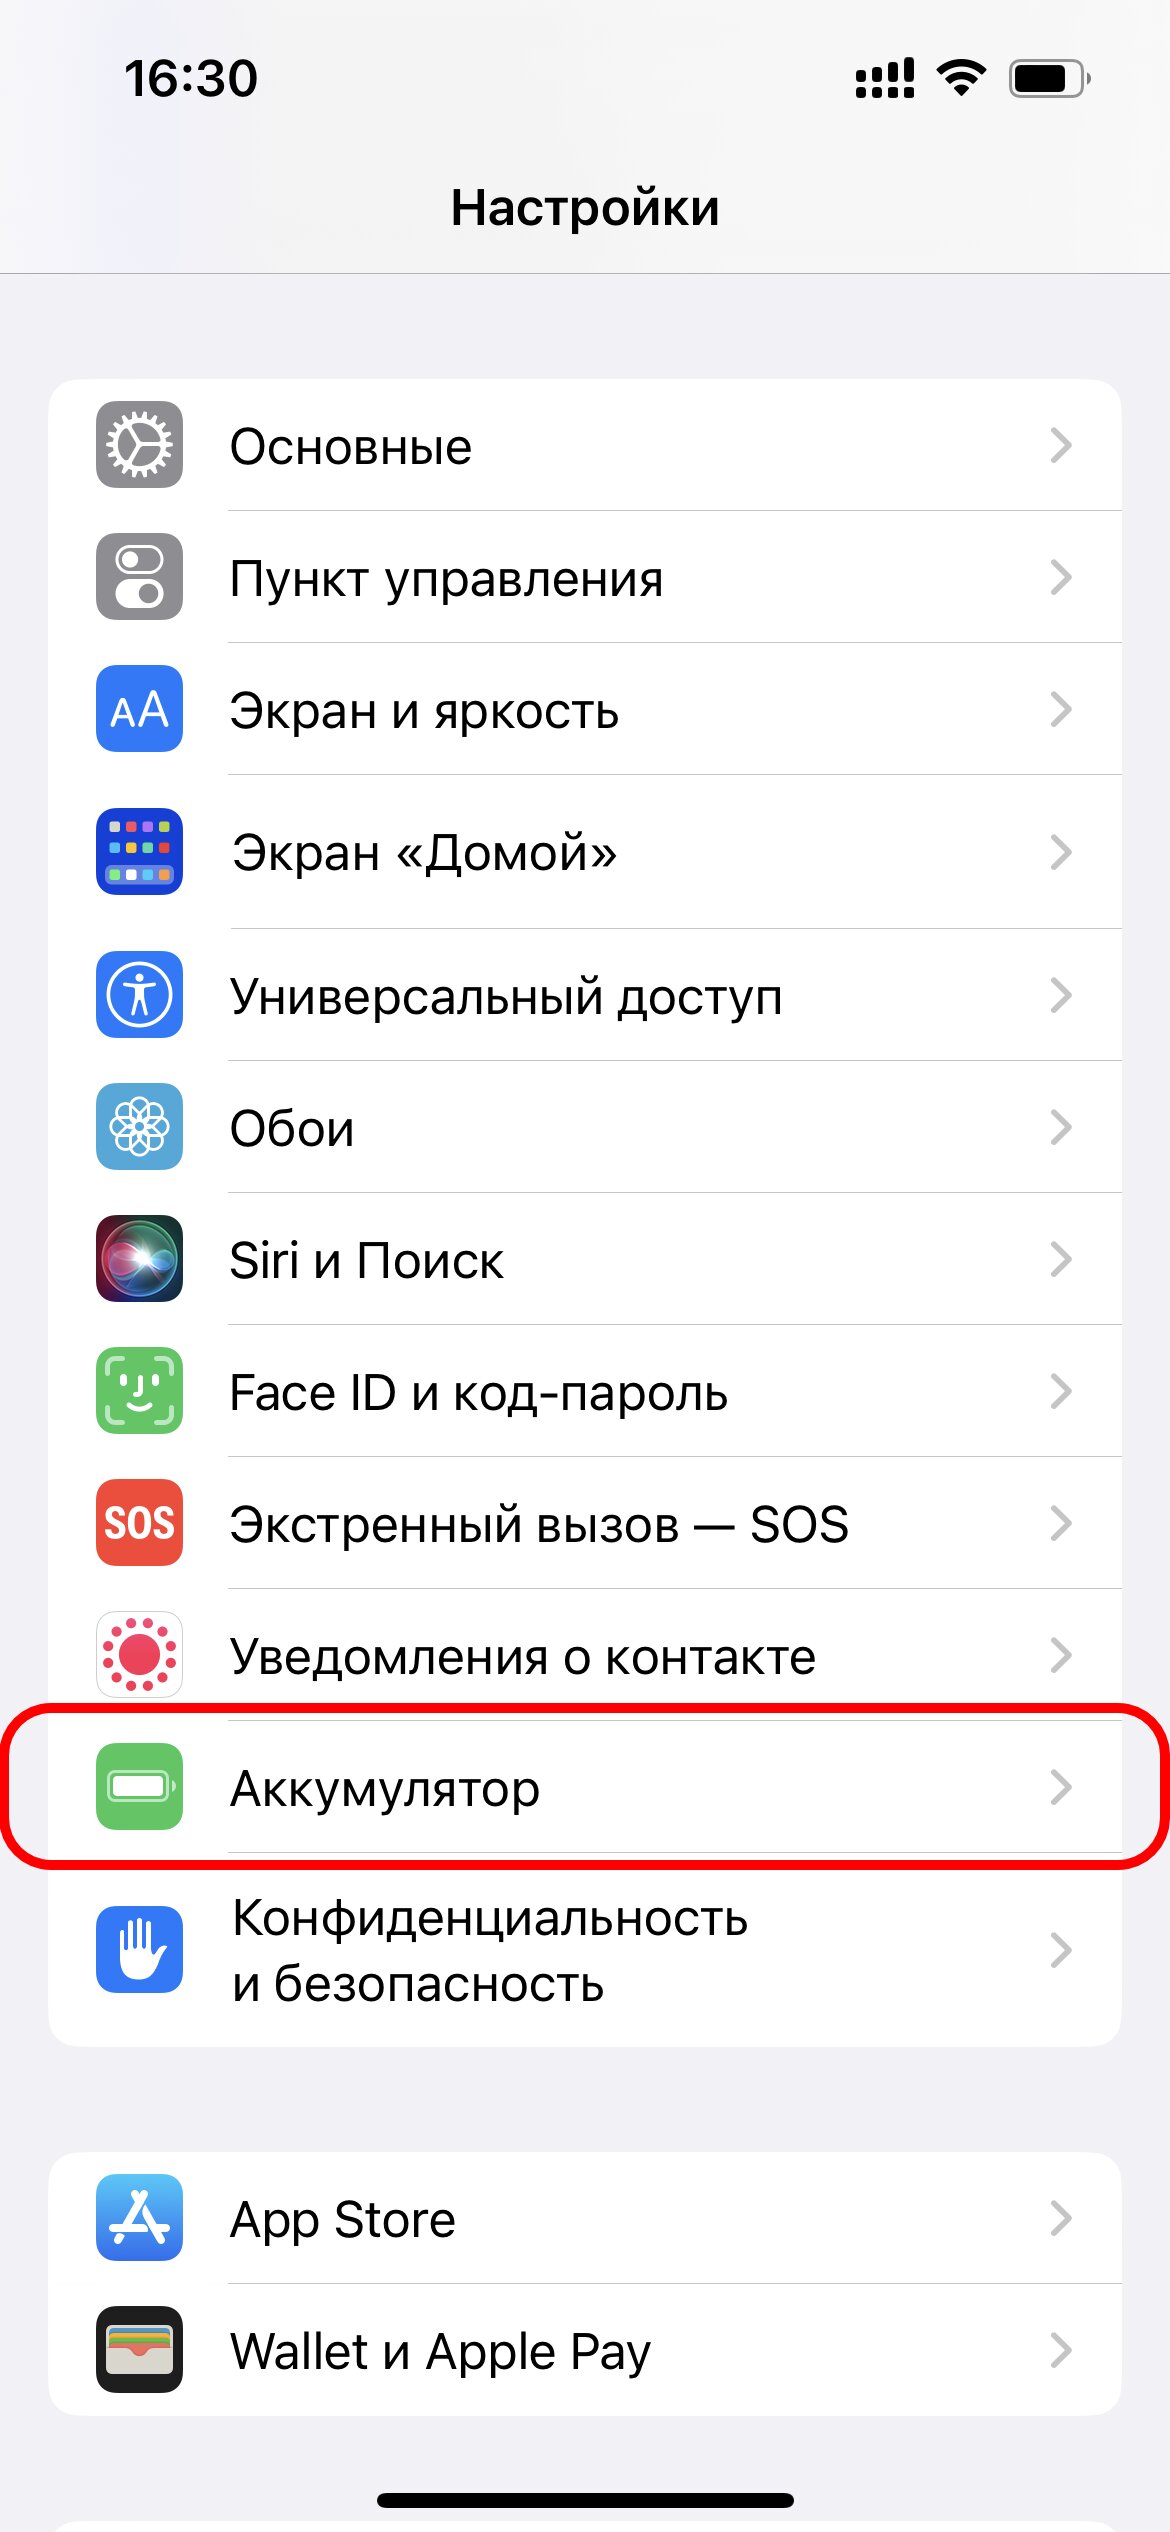 В iOS стало можно включить отображение заряда Айфон в процентах. Попробуйте хоть сейчас